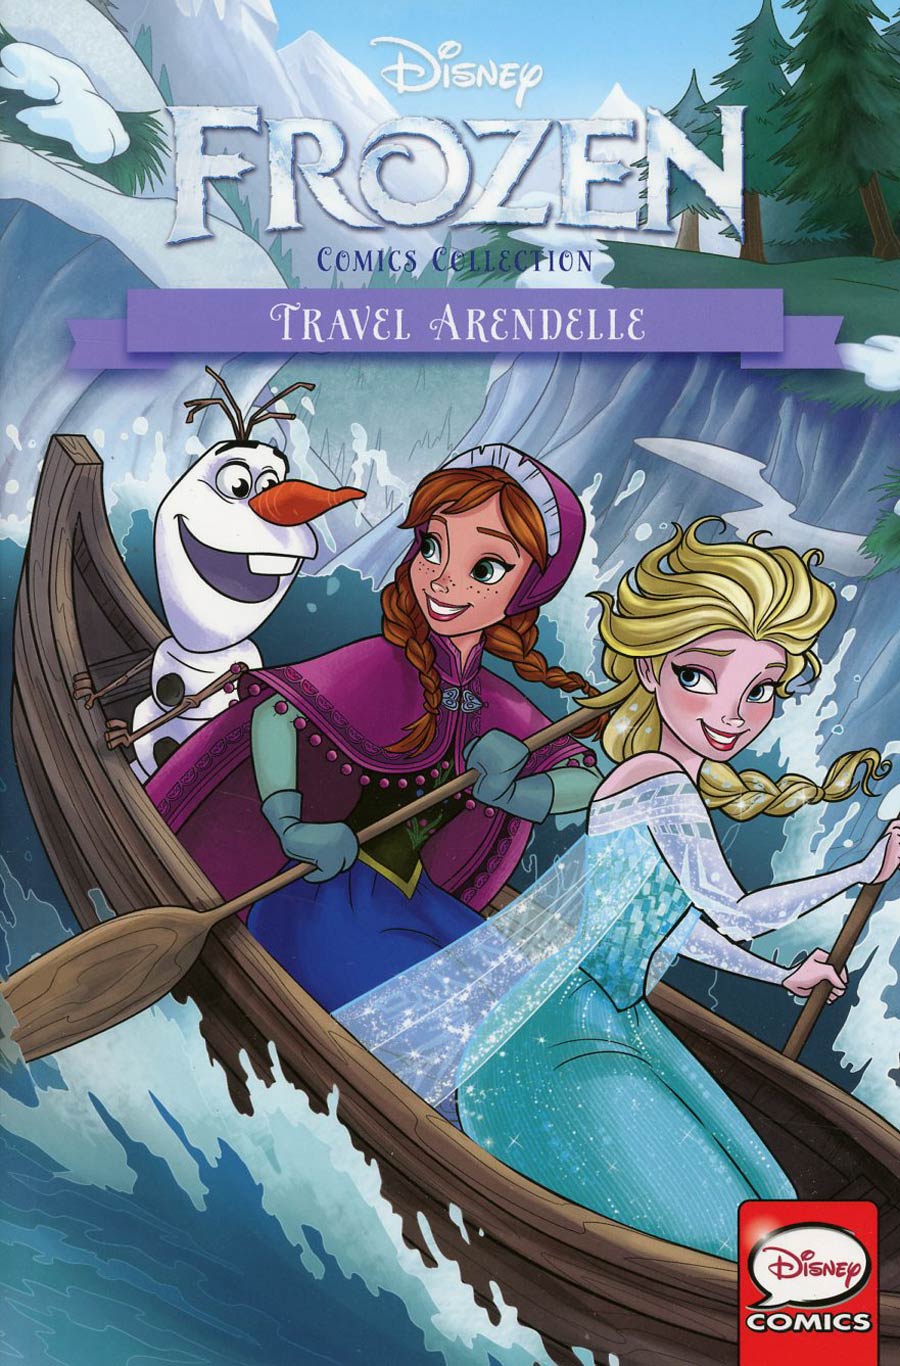 Disneys Frozen Comics Collection Travel Arendelle TP